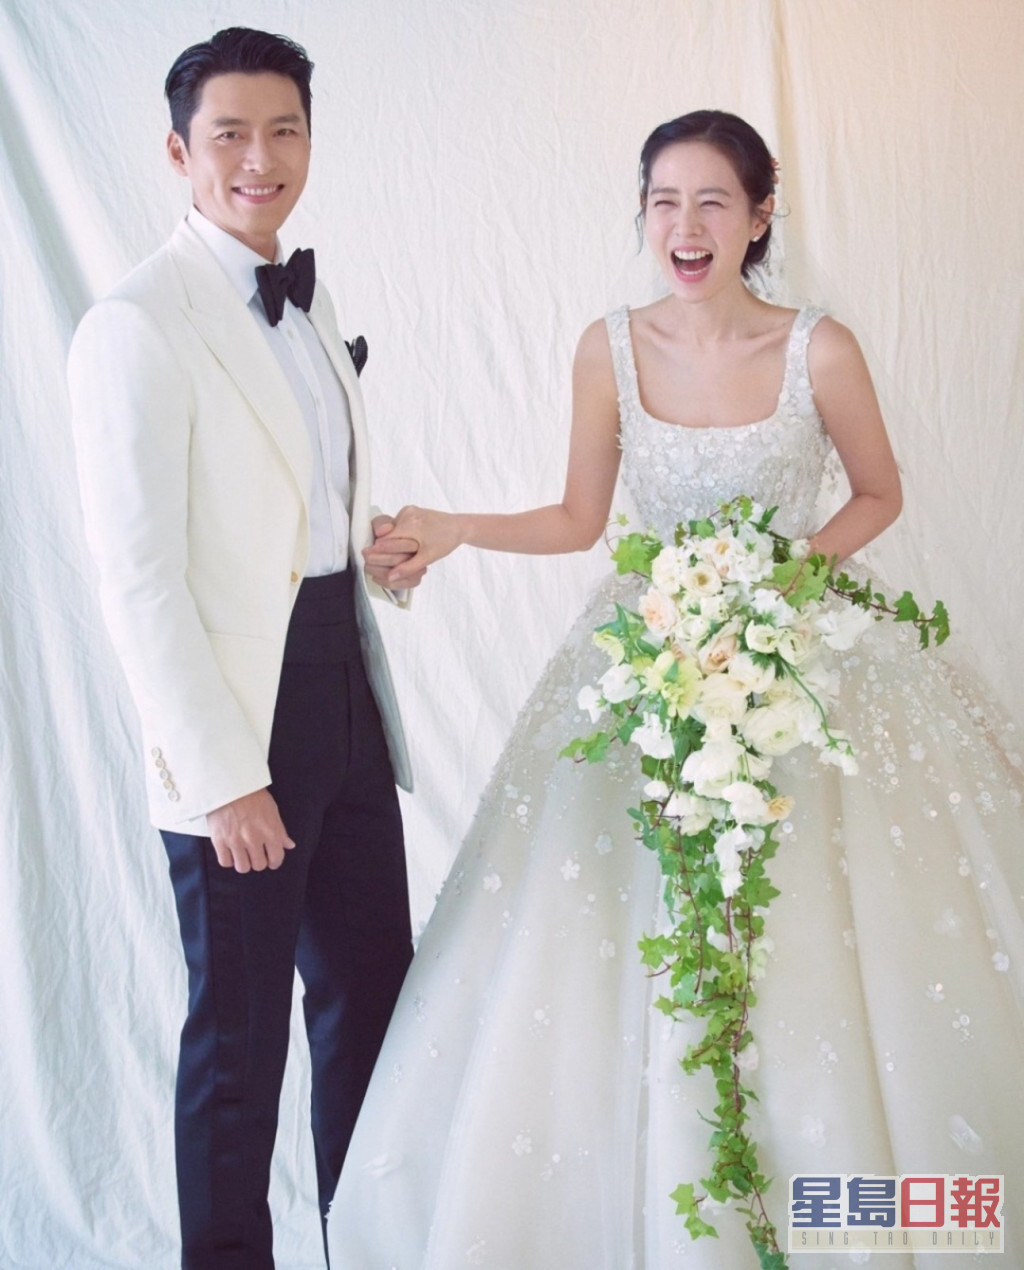 韓媒估計玄彬和孫藝珍的婚禮至少要花費84萬港元。